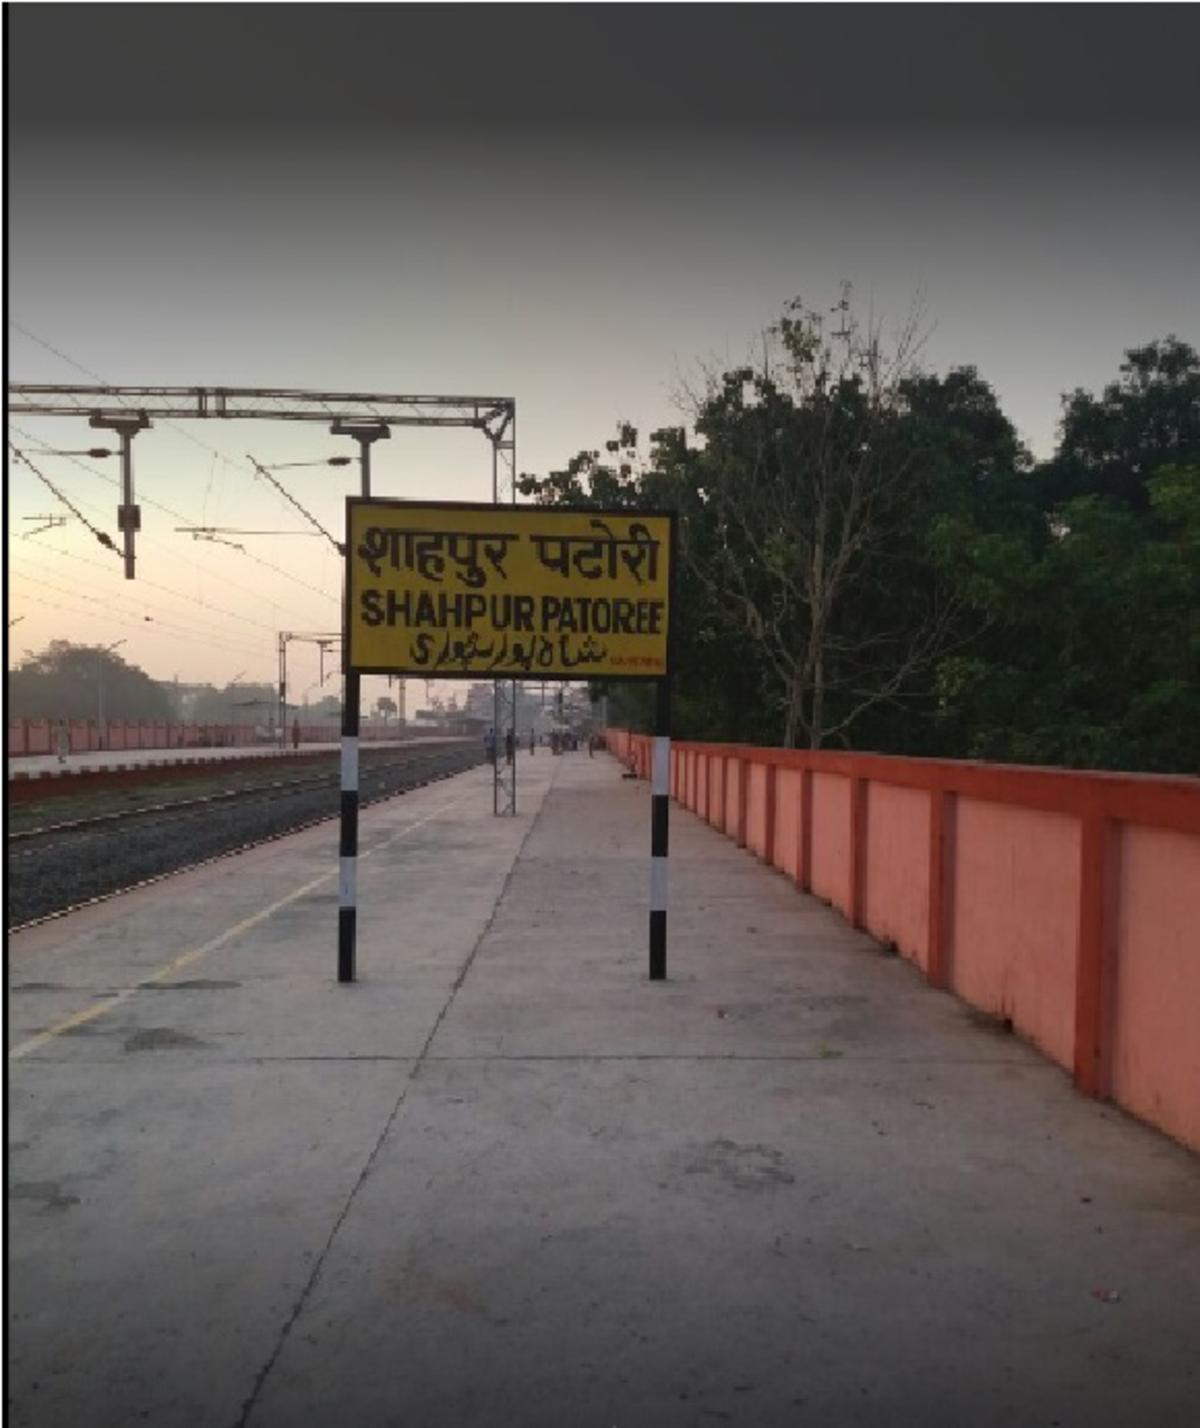 Shahpur patori railway station